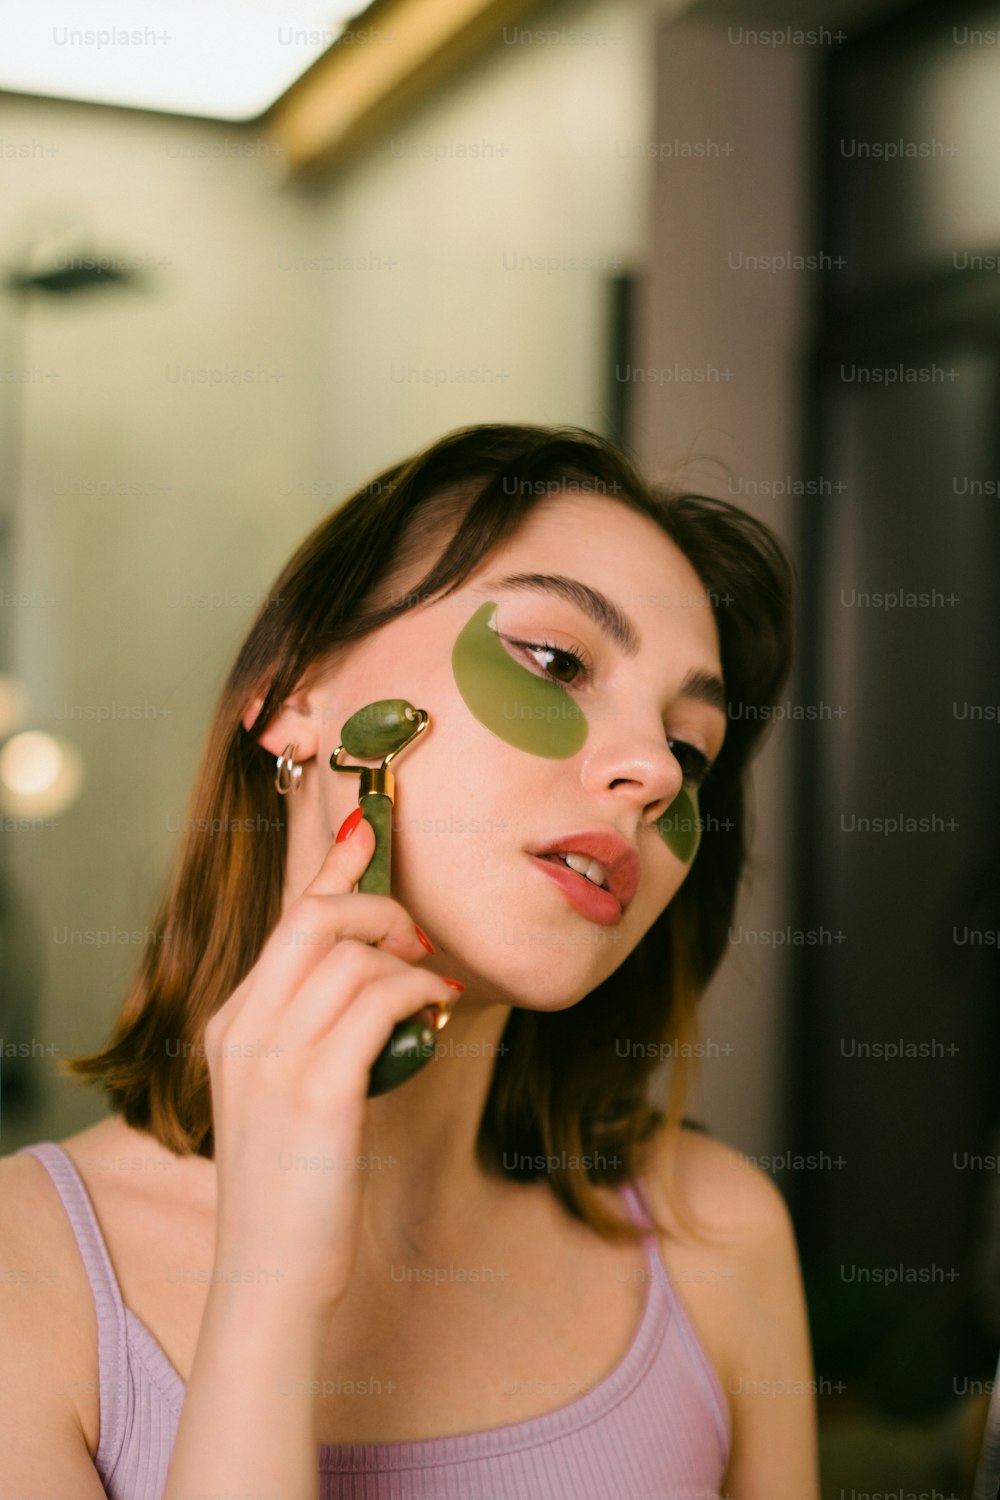 Eine Frau, die einen grünen Gegenstand vor ihr Gesicht hält